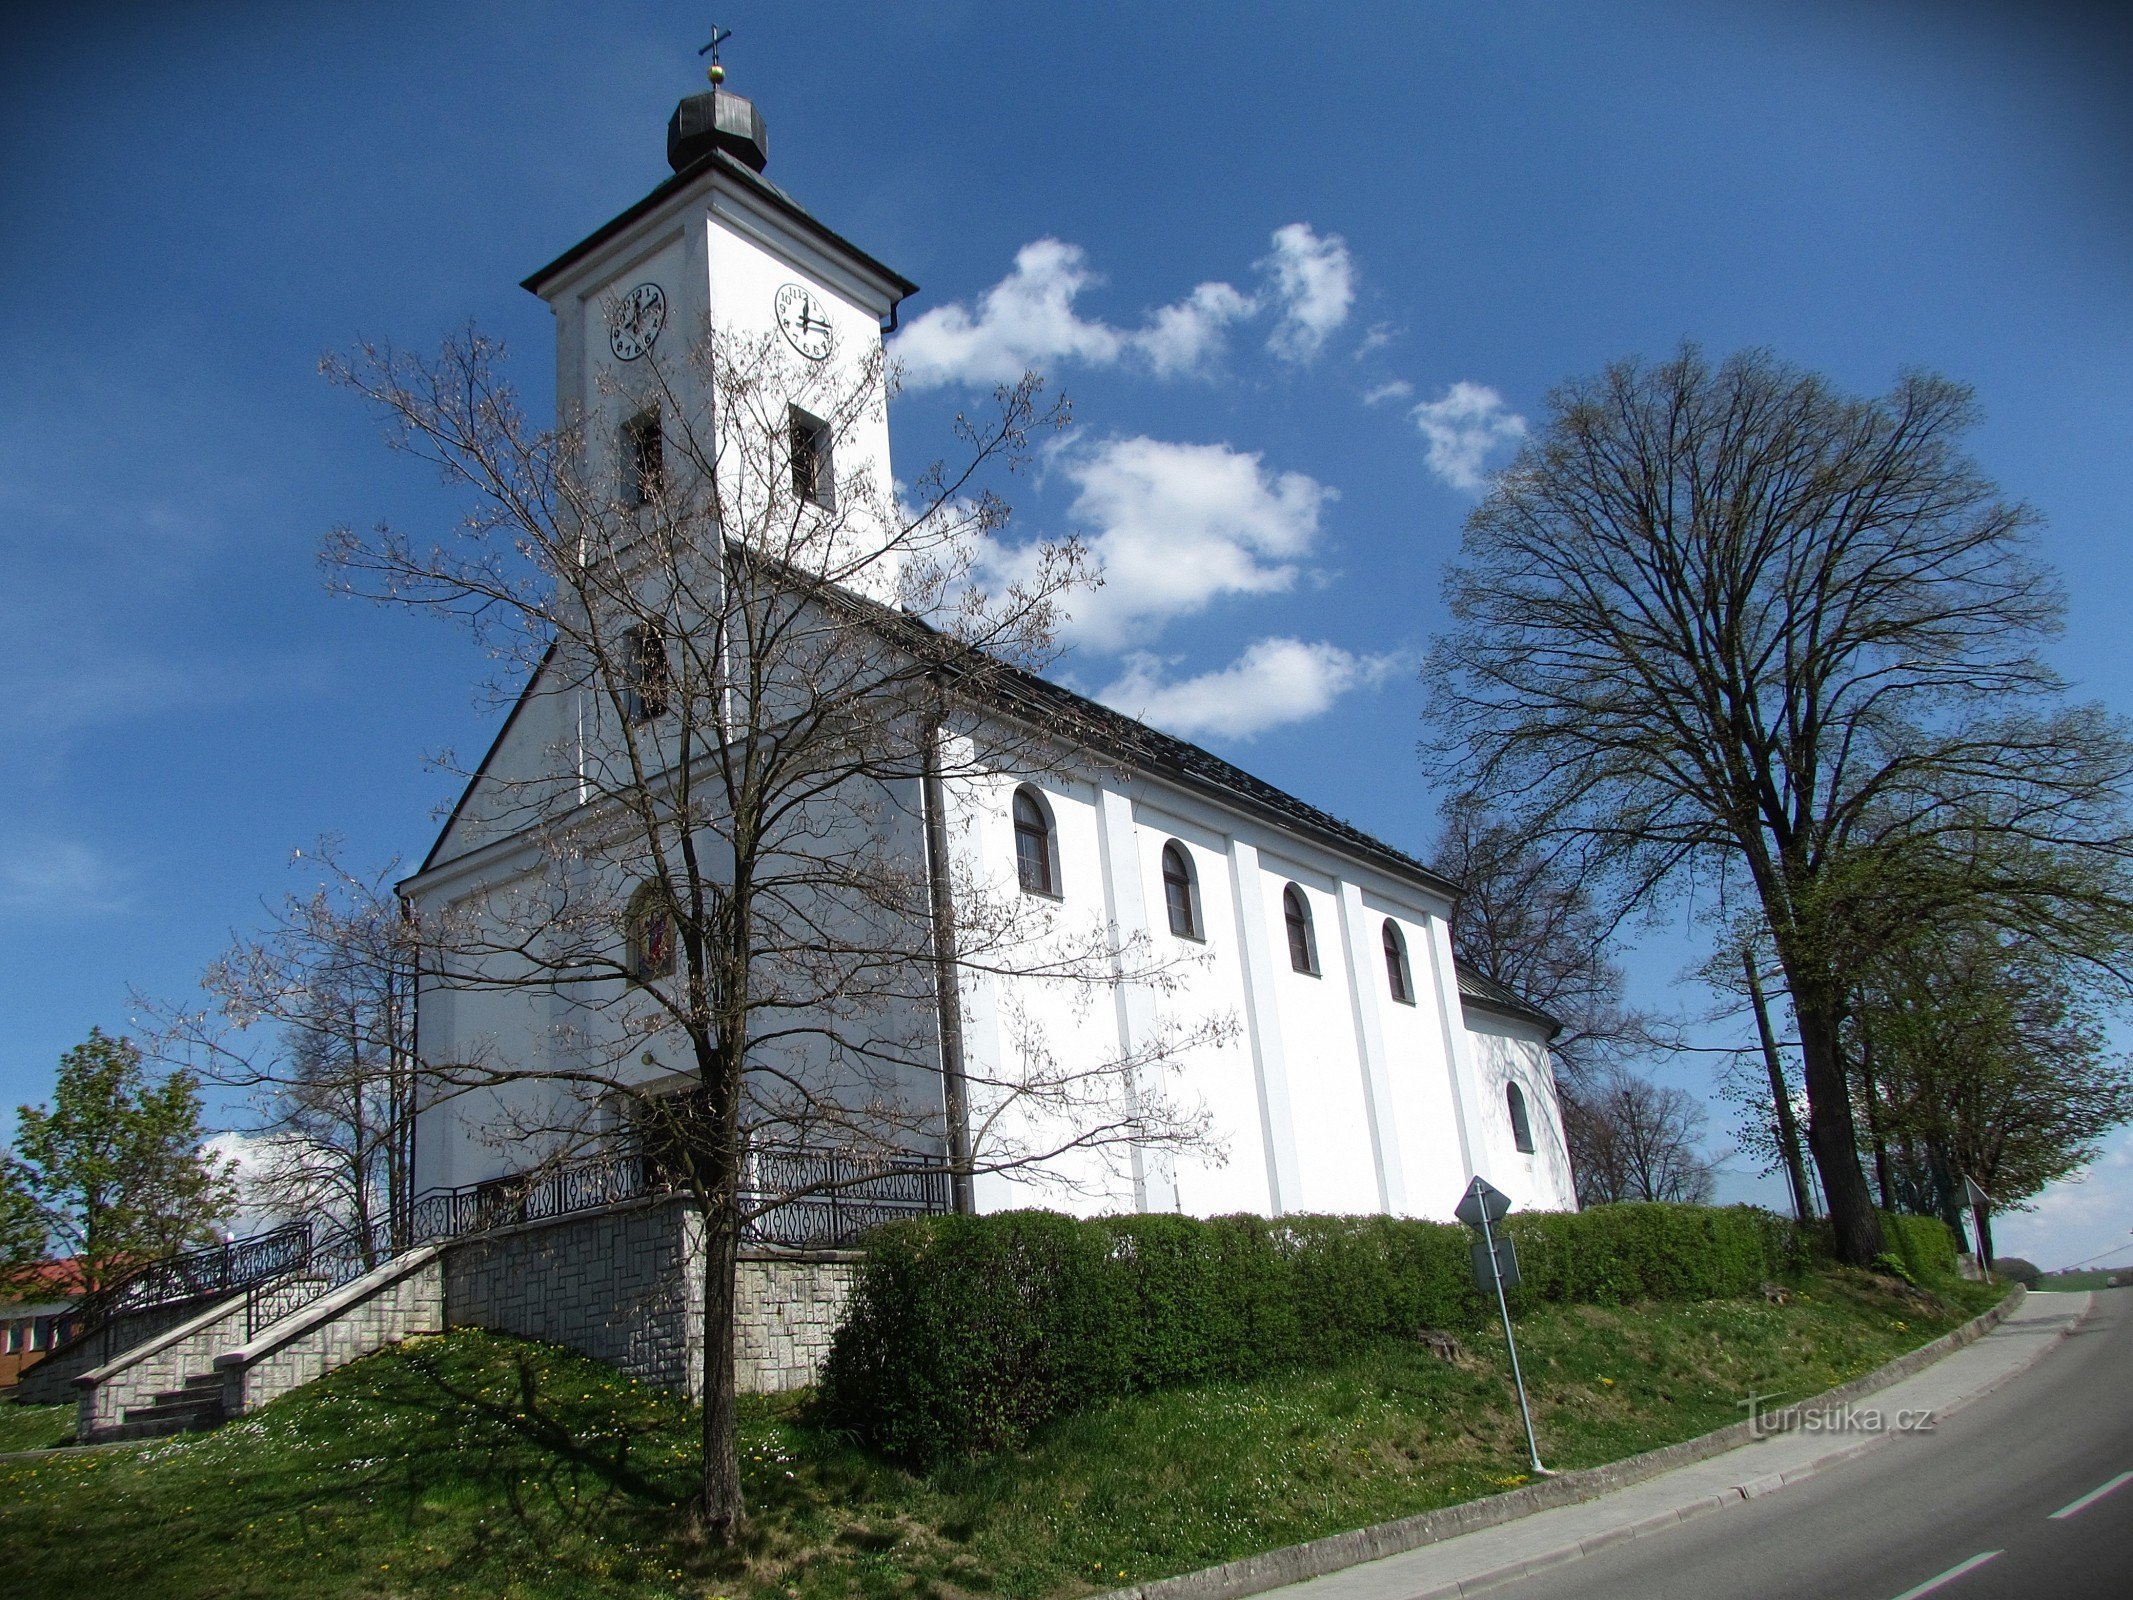 Slopné - igreja de São Roque